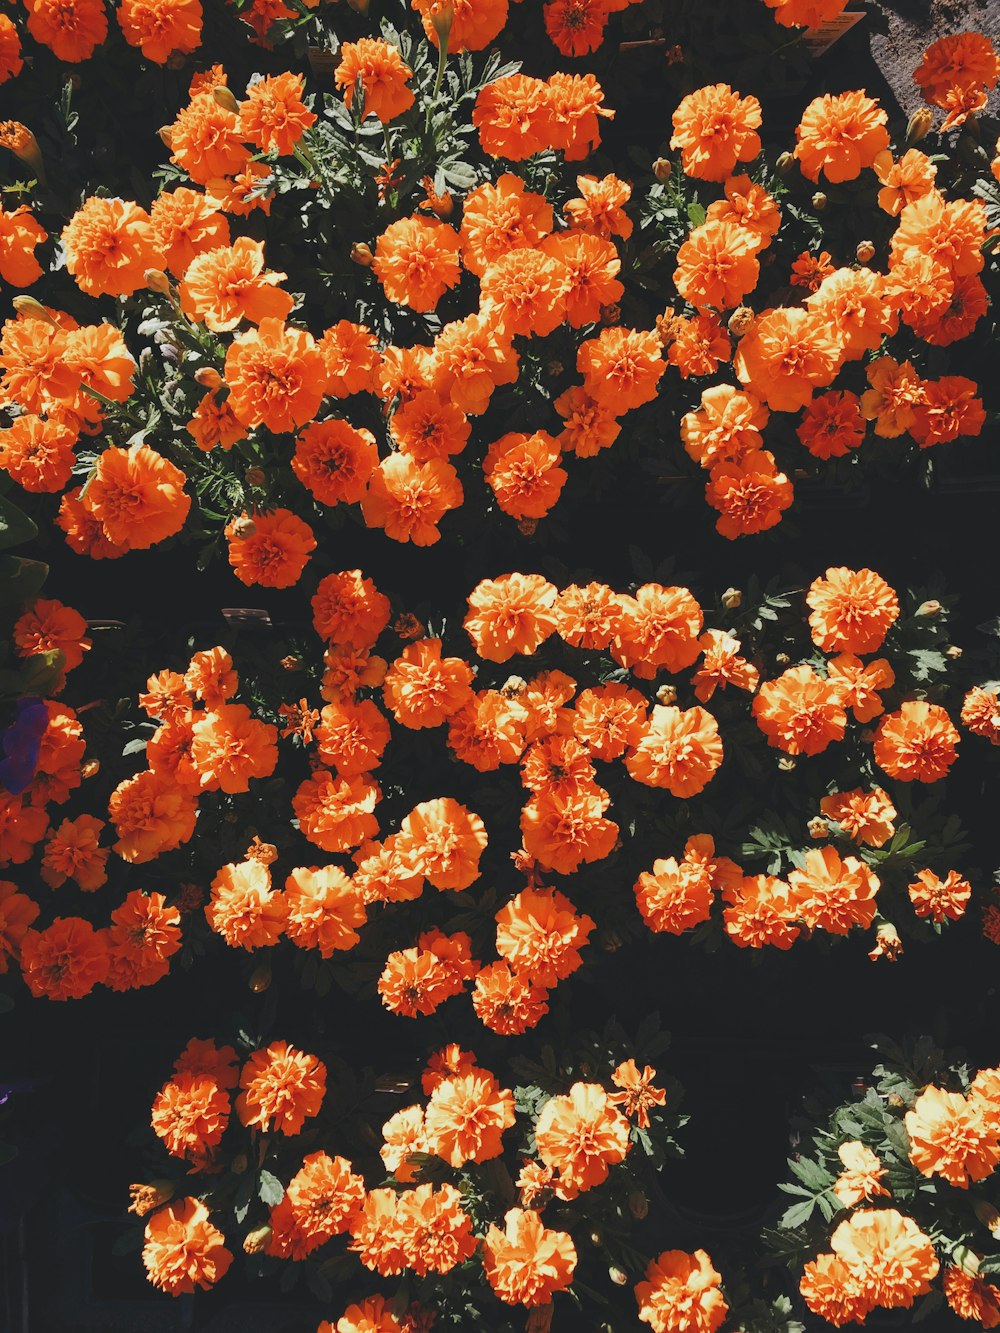 Hoa cam đỏ (Orange petal flowers): Hãy chiêm ngưỡng vẻ đẹp tuyệt vời của những bông hoa cam đỏ với những cánh hoa thuần chất. Từ lâu, hoa cam đỏ đã trở thành biểu tượng của tình yêu và sự nhiệt huyết. Với hương thơm tuyệt vời, những bông hoa này sẽ làm cho không gian của bạn trở nên sống động và thú vị.